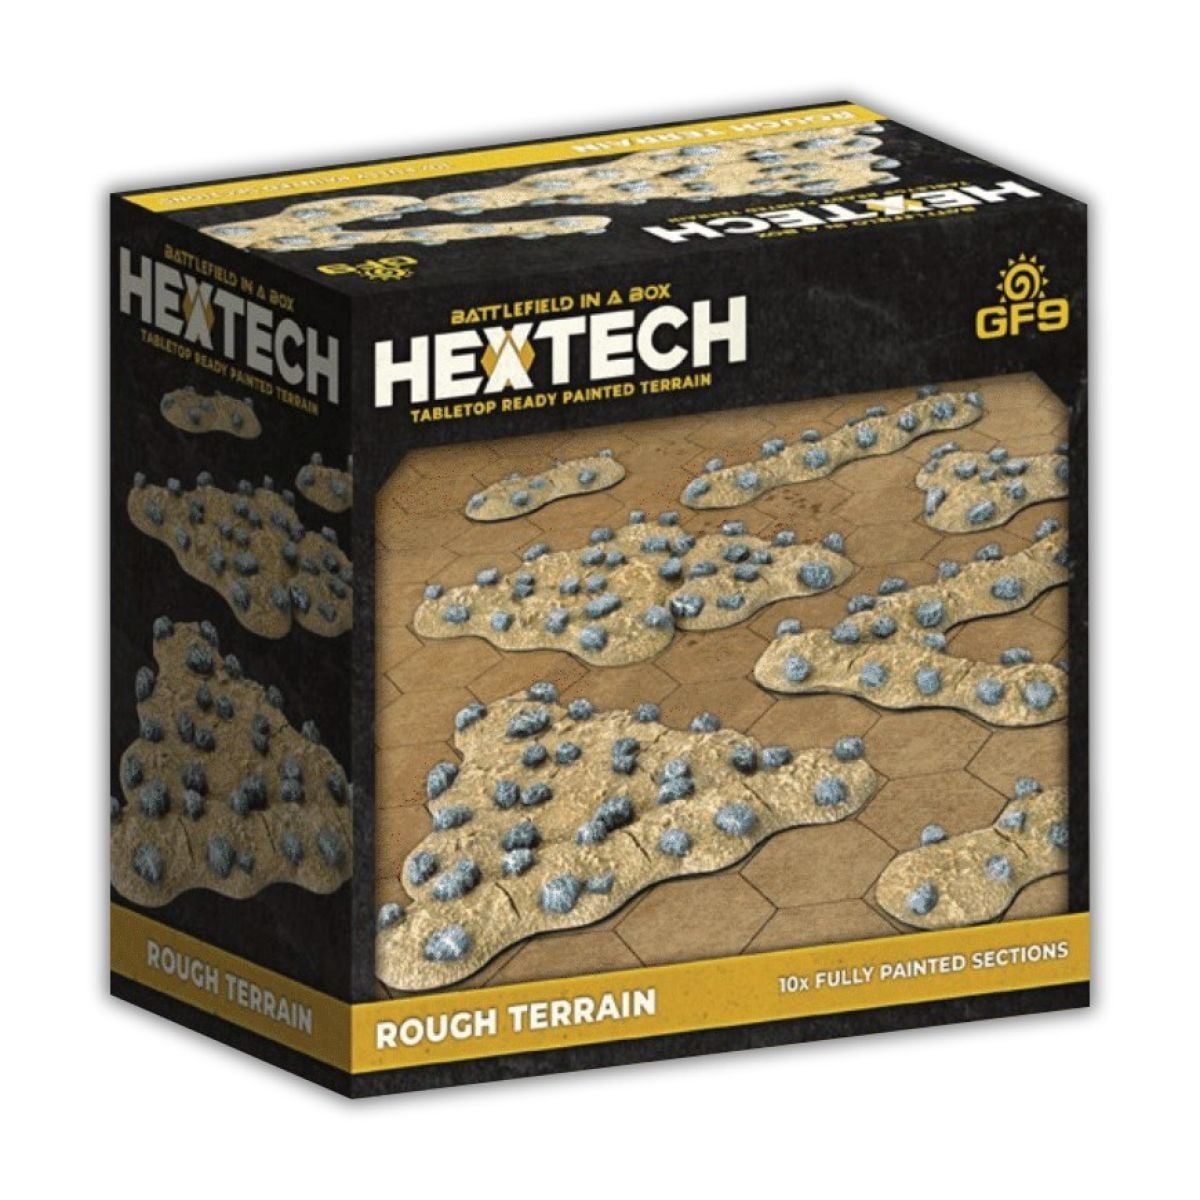 Hextech - Rough Terrain